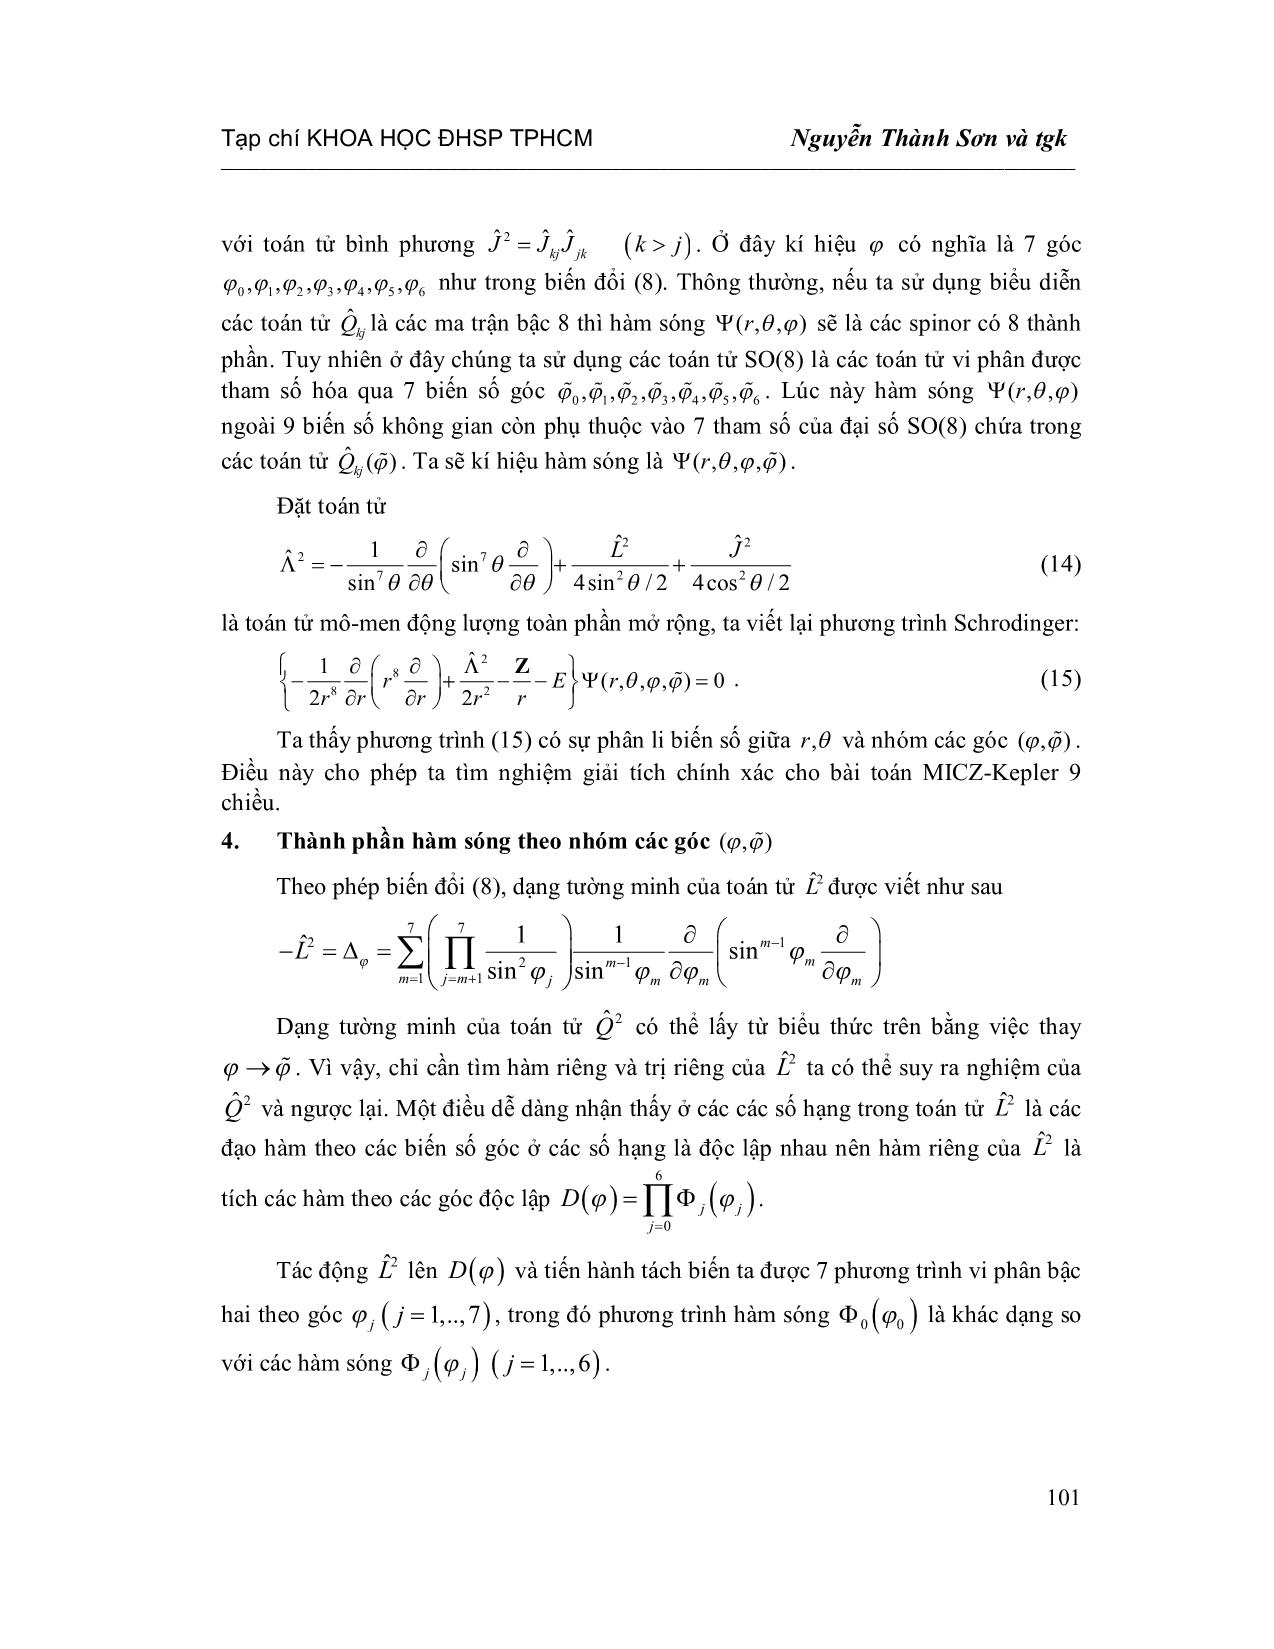 Lời giải chính xác cho bài toán Micz-Kepler chín chiều trang 5